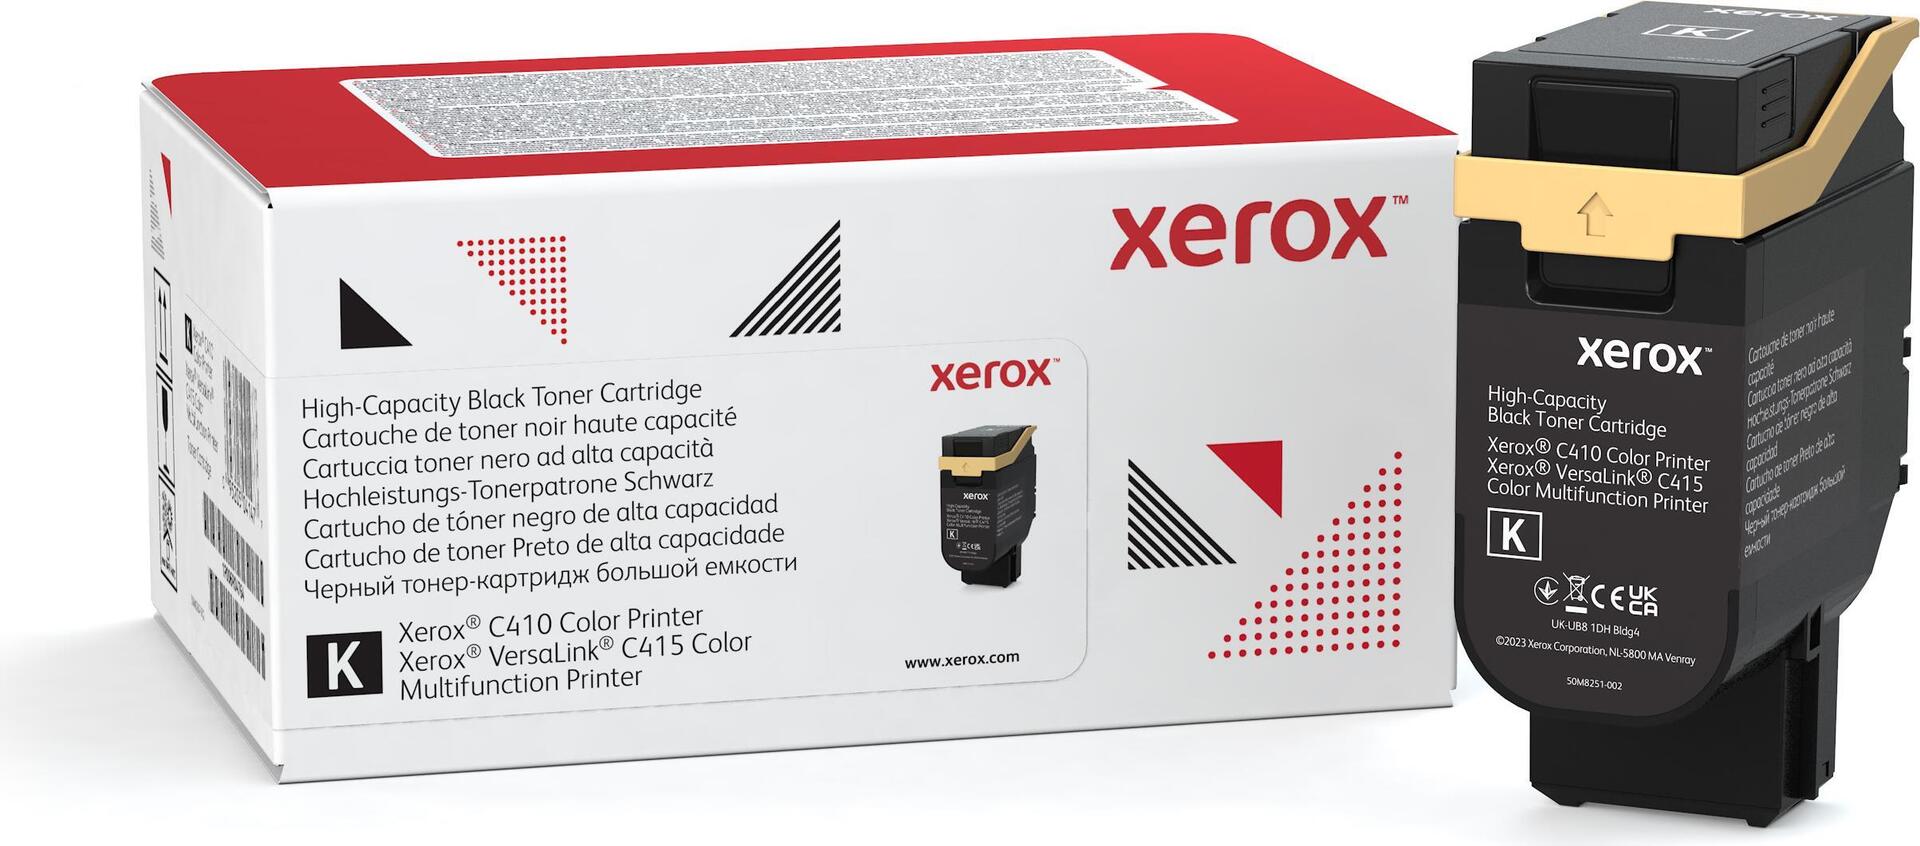 Xerox Mit hoher Kapazität (006R04685)